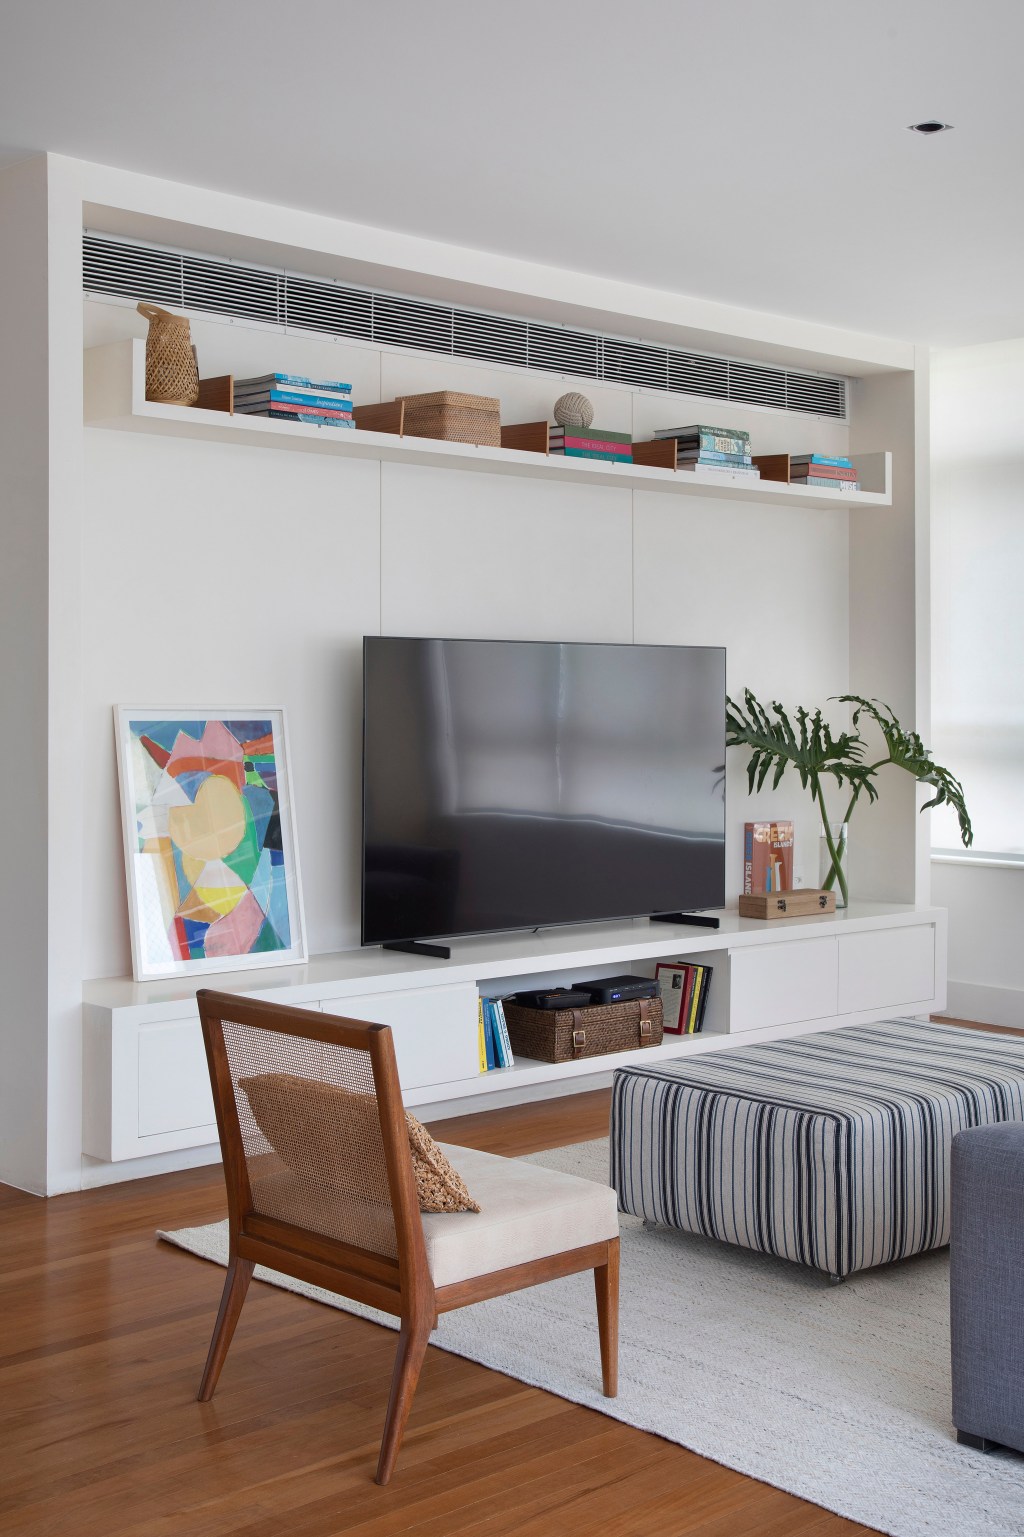 Apartamento alugado 240 m2 nova área social três semanas Brise Arquitetura sala de tv sofa cadeira madeira tapete